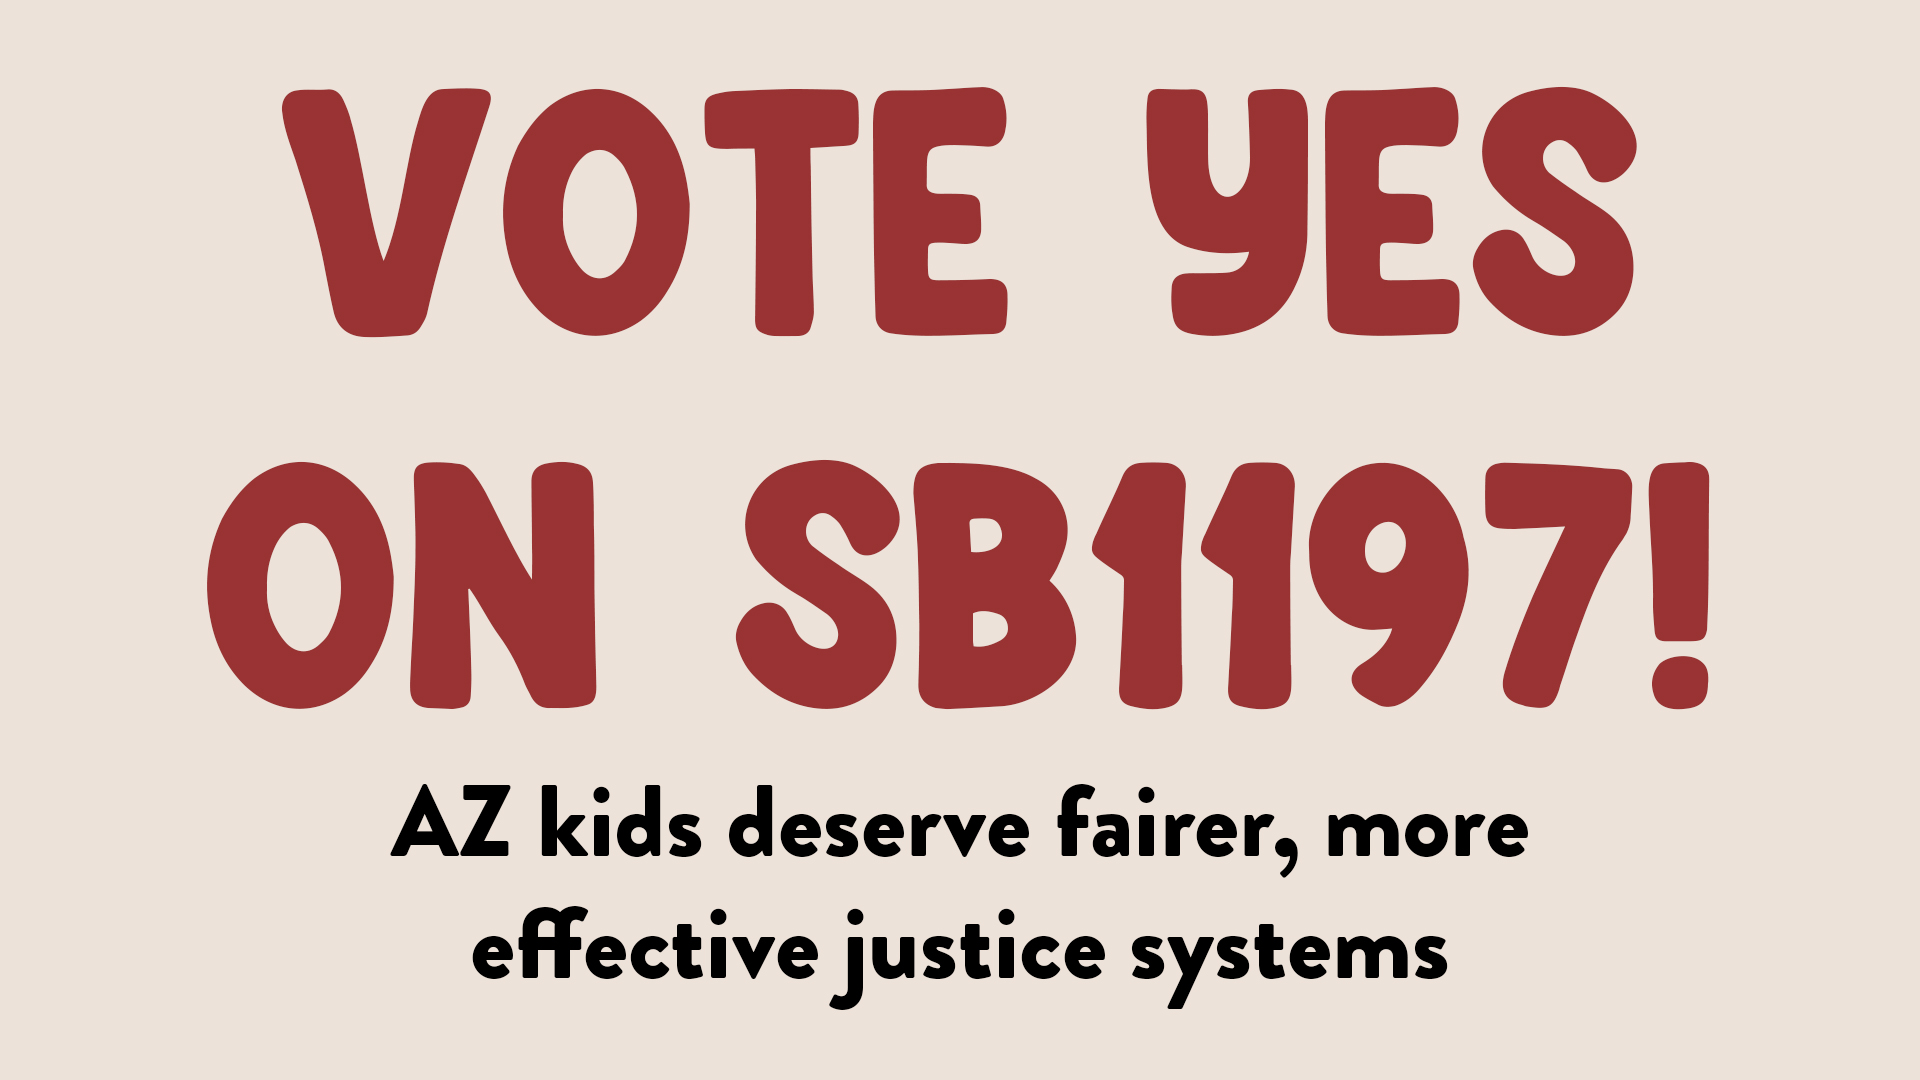 Arizona kids deserve a fair justice system